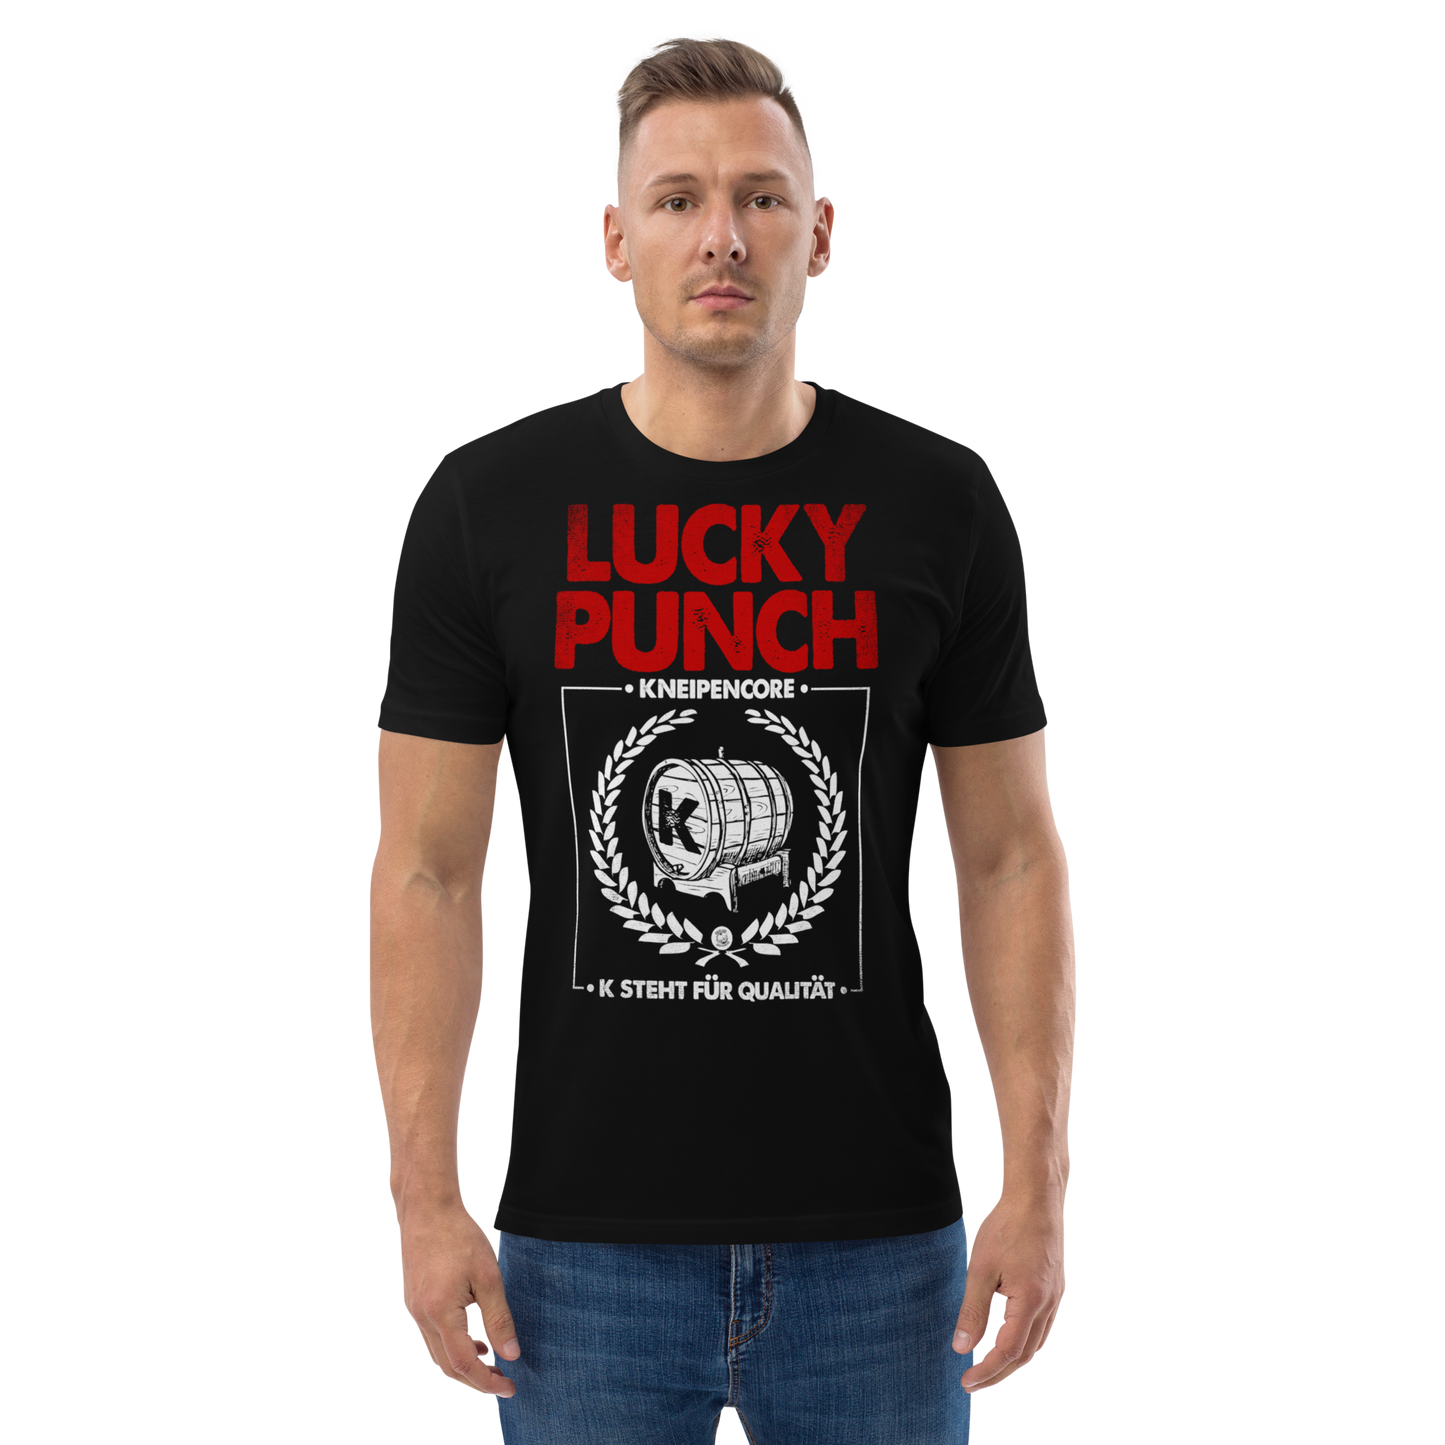 Lucky Punch - K steht für Qualität Shirt